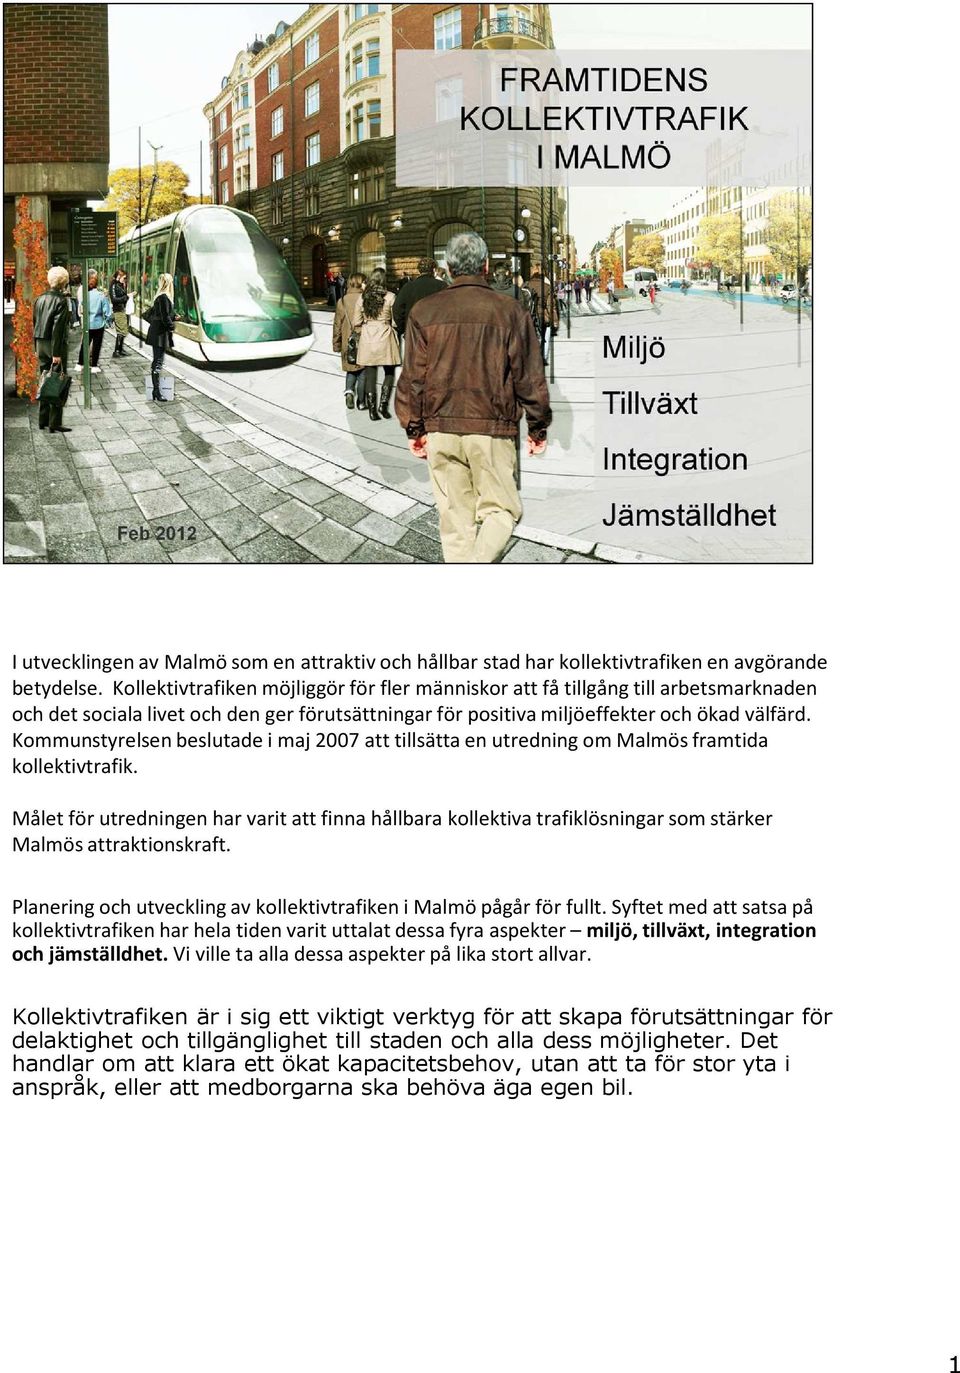 Kommunstyrelsen beslutade i maj 2007 att tillsätta en utredning om Malmös framtida kollektivtrafik.